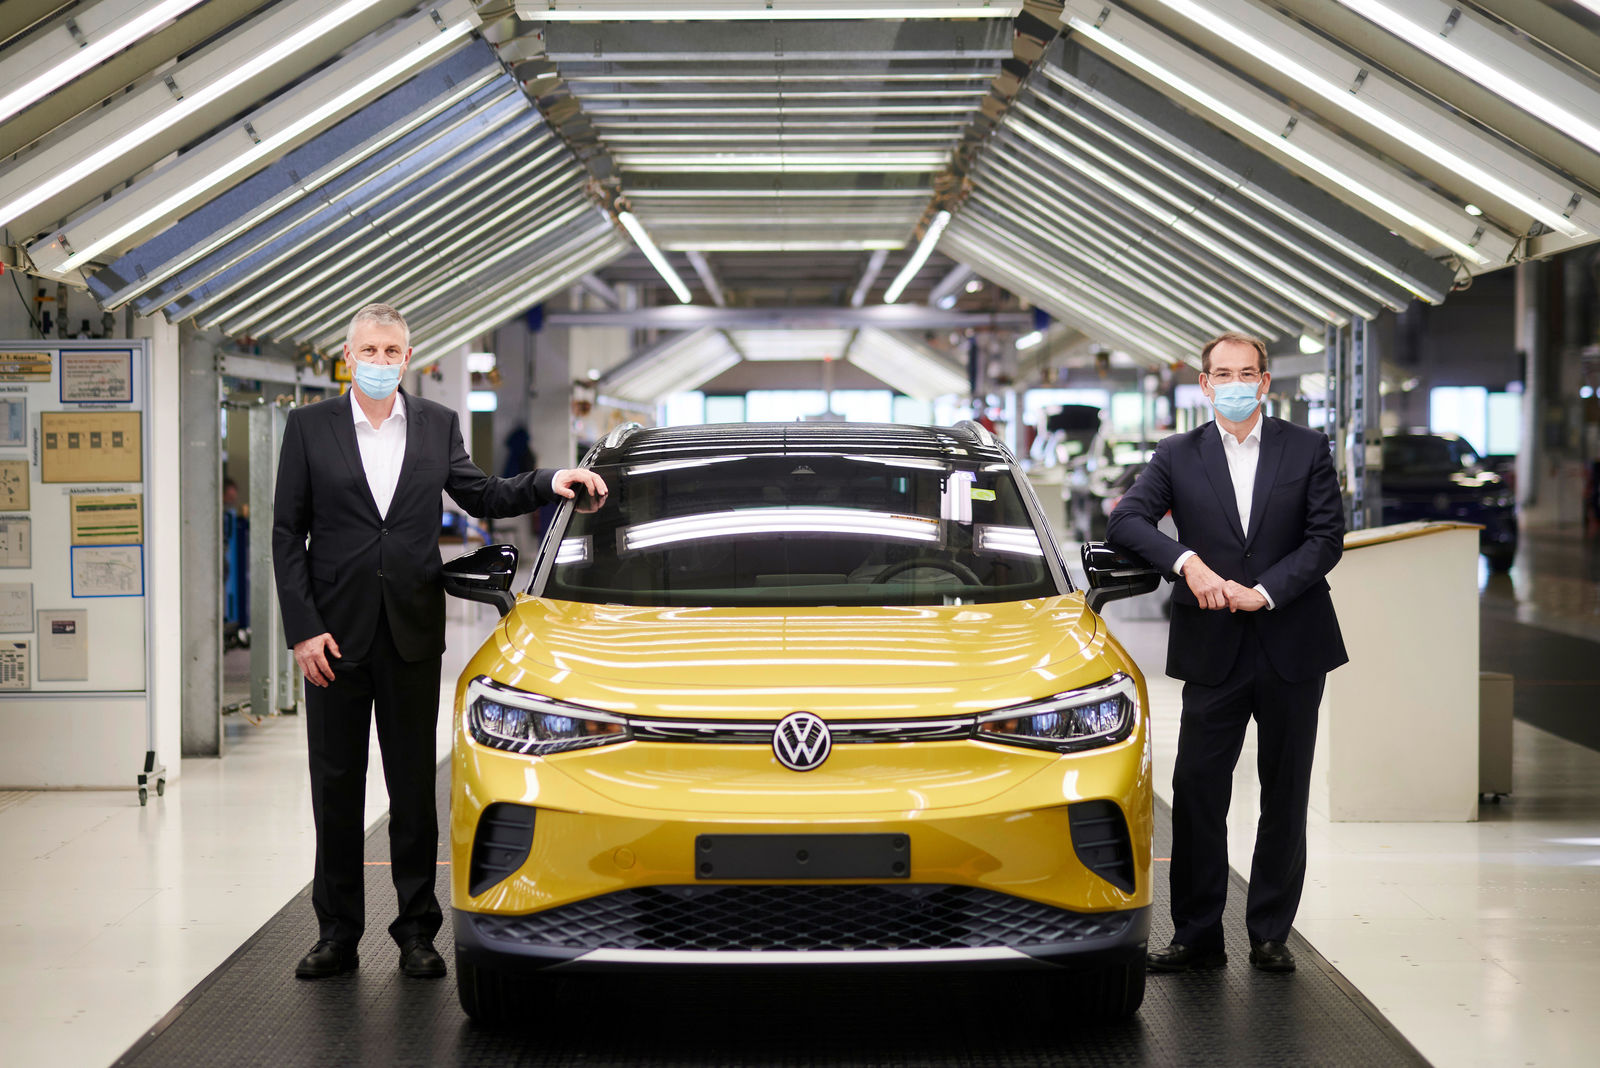 Stefan Loth wird Vorsitzender der Geschäftsführung von Volkswagen Sachsen